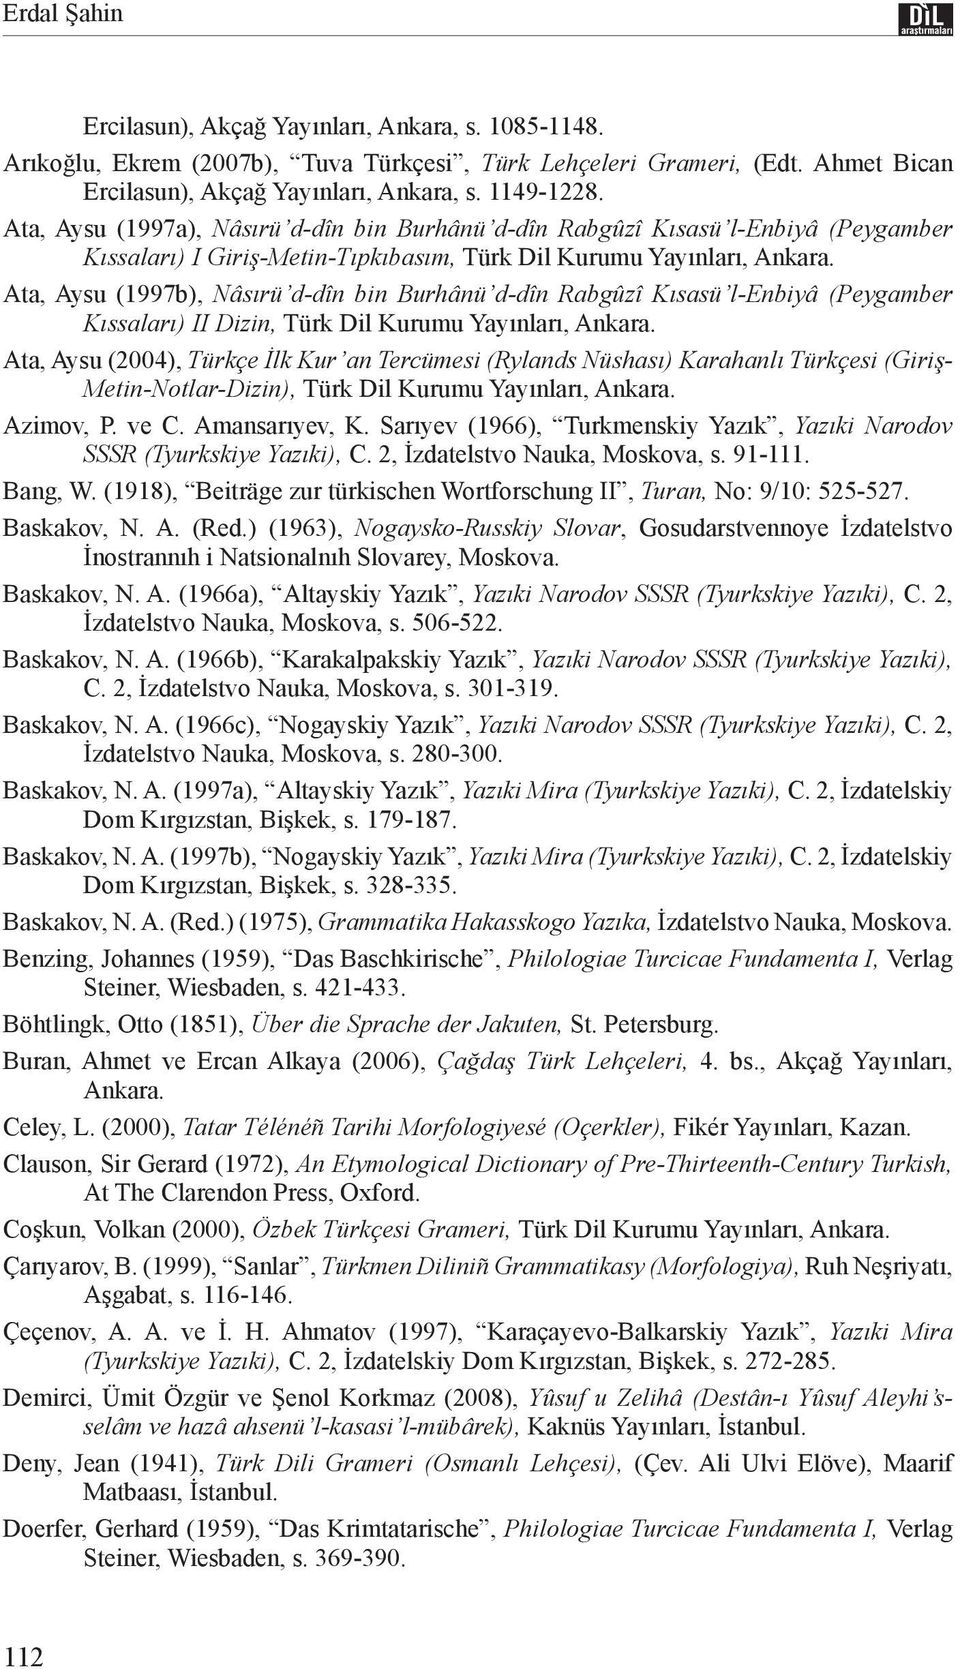 Ata, Aysu (1997b), Nâsırü d-dîn bin Burhânü d-dîn Rabgûzî Kısasü l-enbiyâ (Peygamber Kıssaları) II Dizin, Türk Dil Kurumu Yayınları, Ankara.